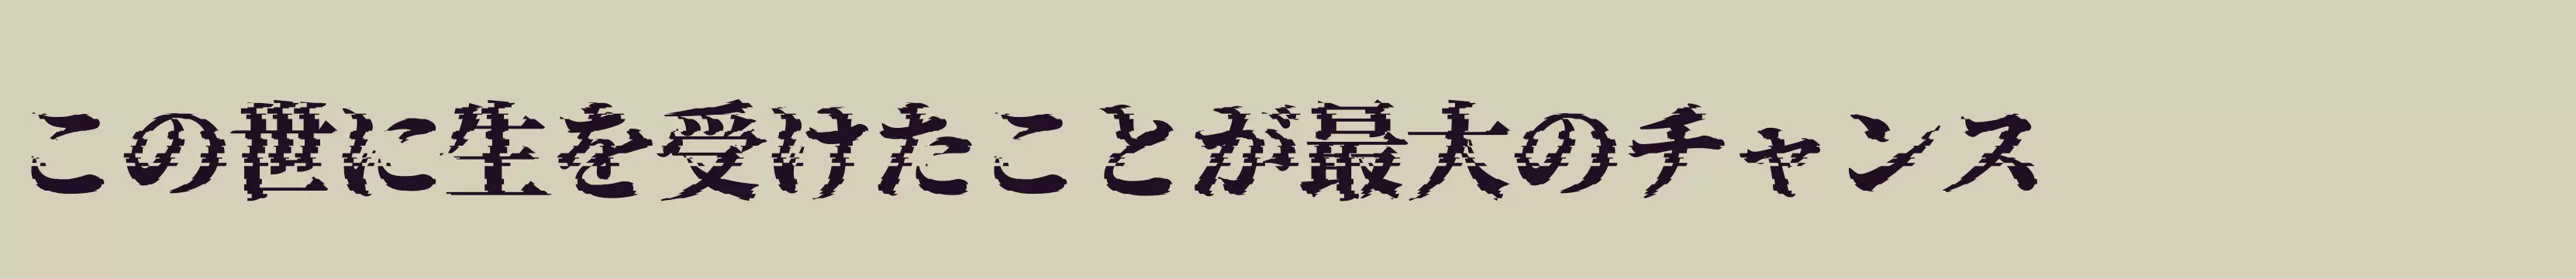 「瀞ノグリッチ明朝H4」字体效果图